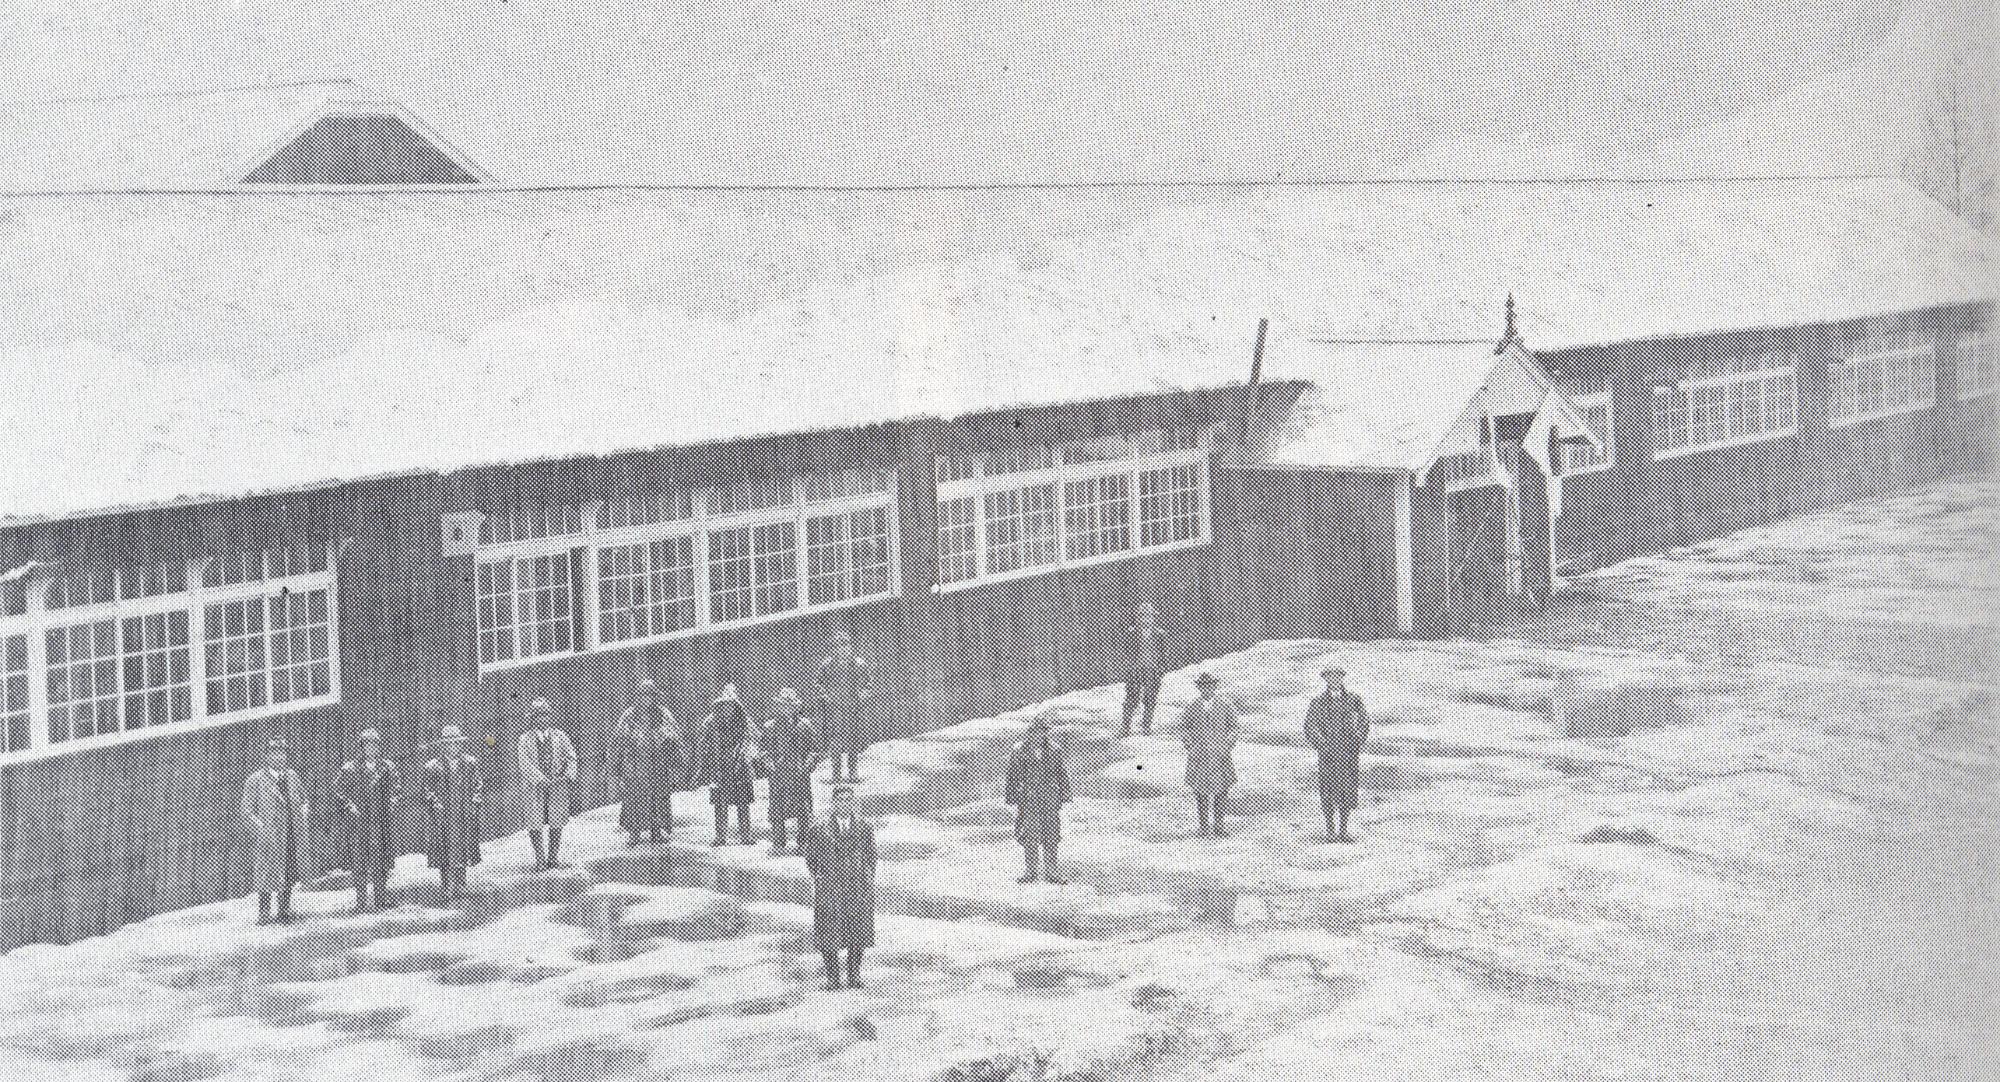 雪が積もった校舎の前に数名の男性が立ち上空を見上げている昭和10年頃の温根別小学校の校舎の白黒写真